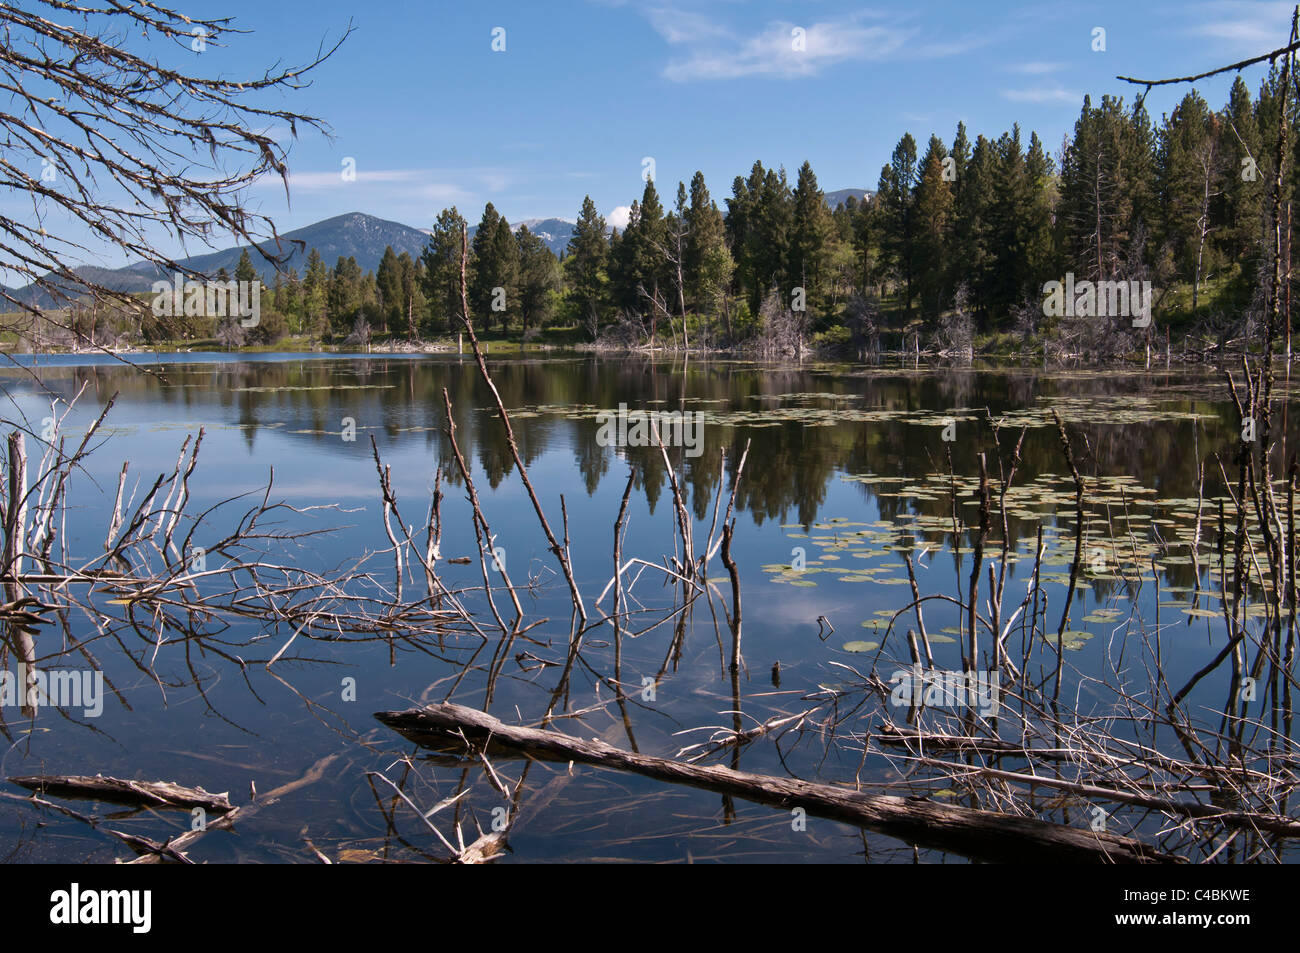 L'un des nombreux étangs électrique trouvée dans la vallée de Pieds-noirs Montana près de Bishop qui servent d'habitat riverain de la faune.. Banque D'Images